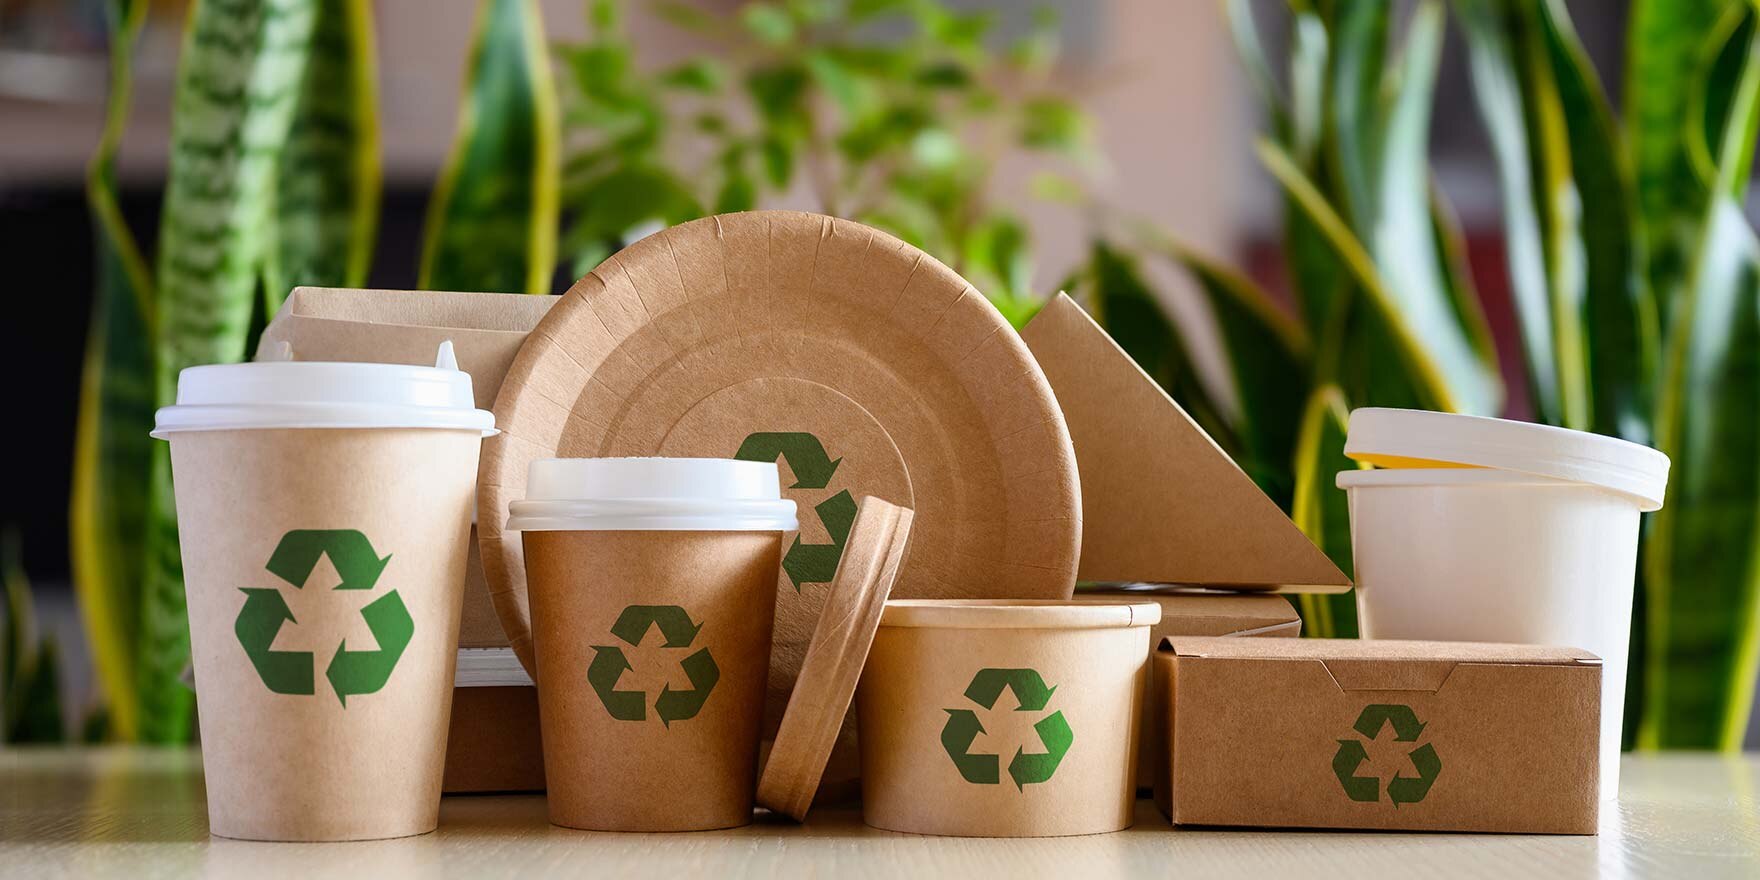 Umweltfreundliches Einweggeschirr mit Recycling-Schildern, im Hintergrund Grünpflanzen. 